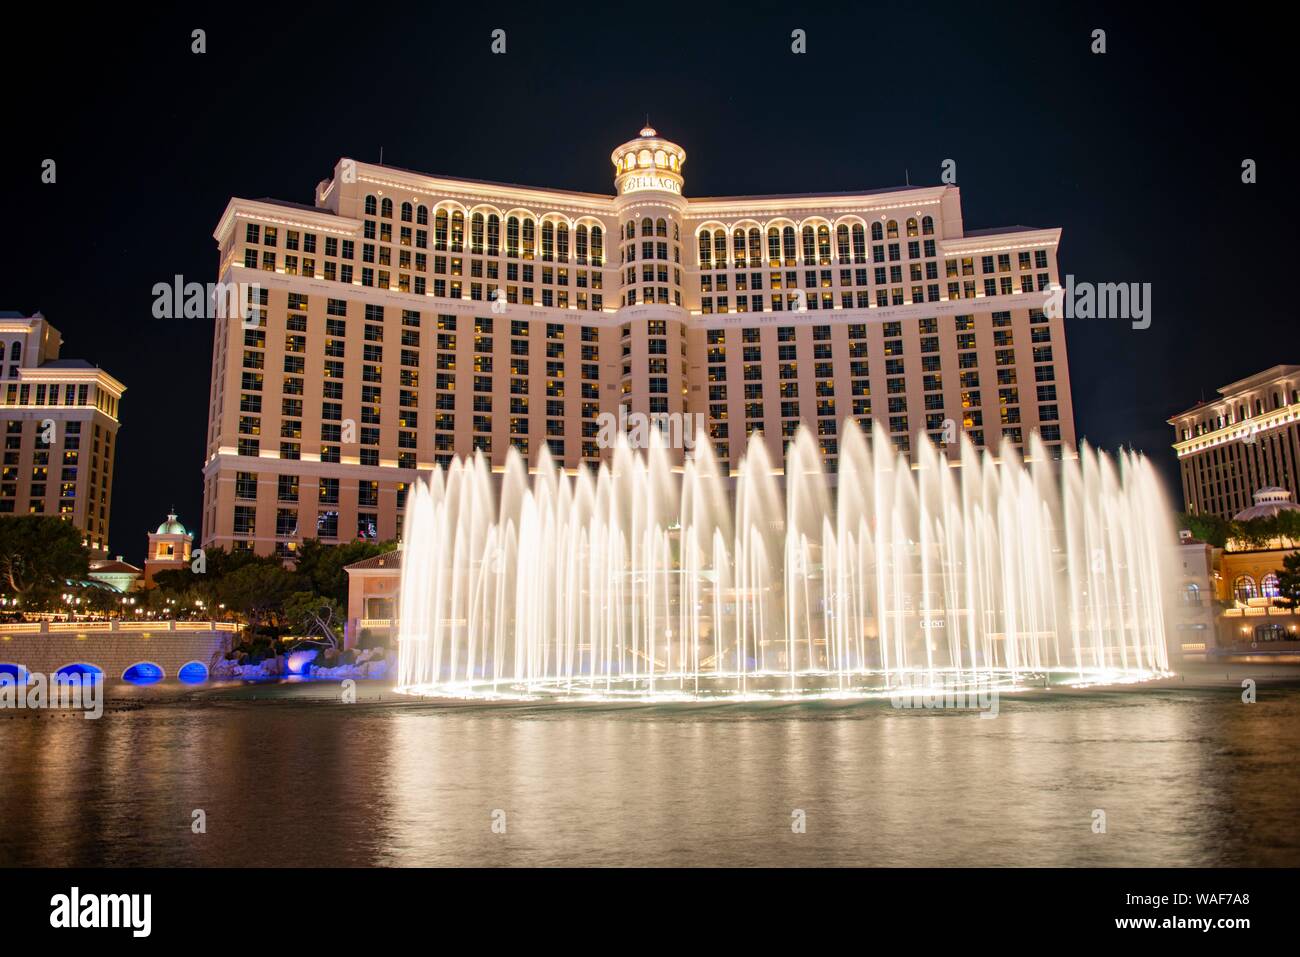 Spettacolo di Luci e fontane, la fontana di fronte all'Hotel Bellagio, night shot, hotel di lusso a Las Vegas Strip di Las Vegas Boulevard, Las Vegas Foto Stock